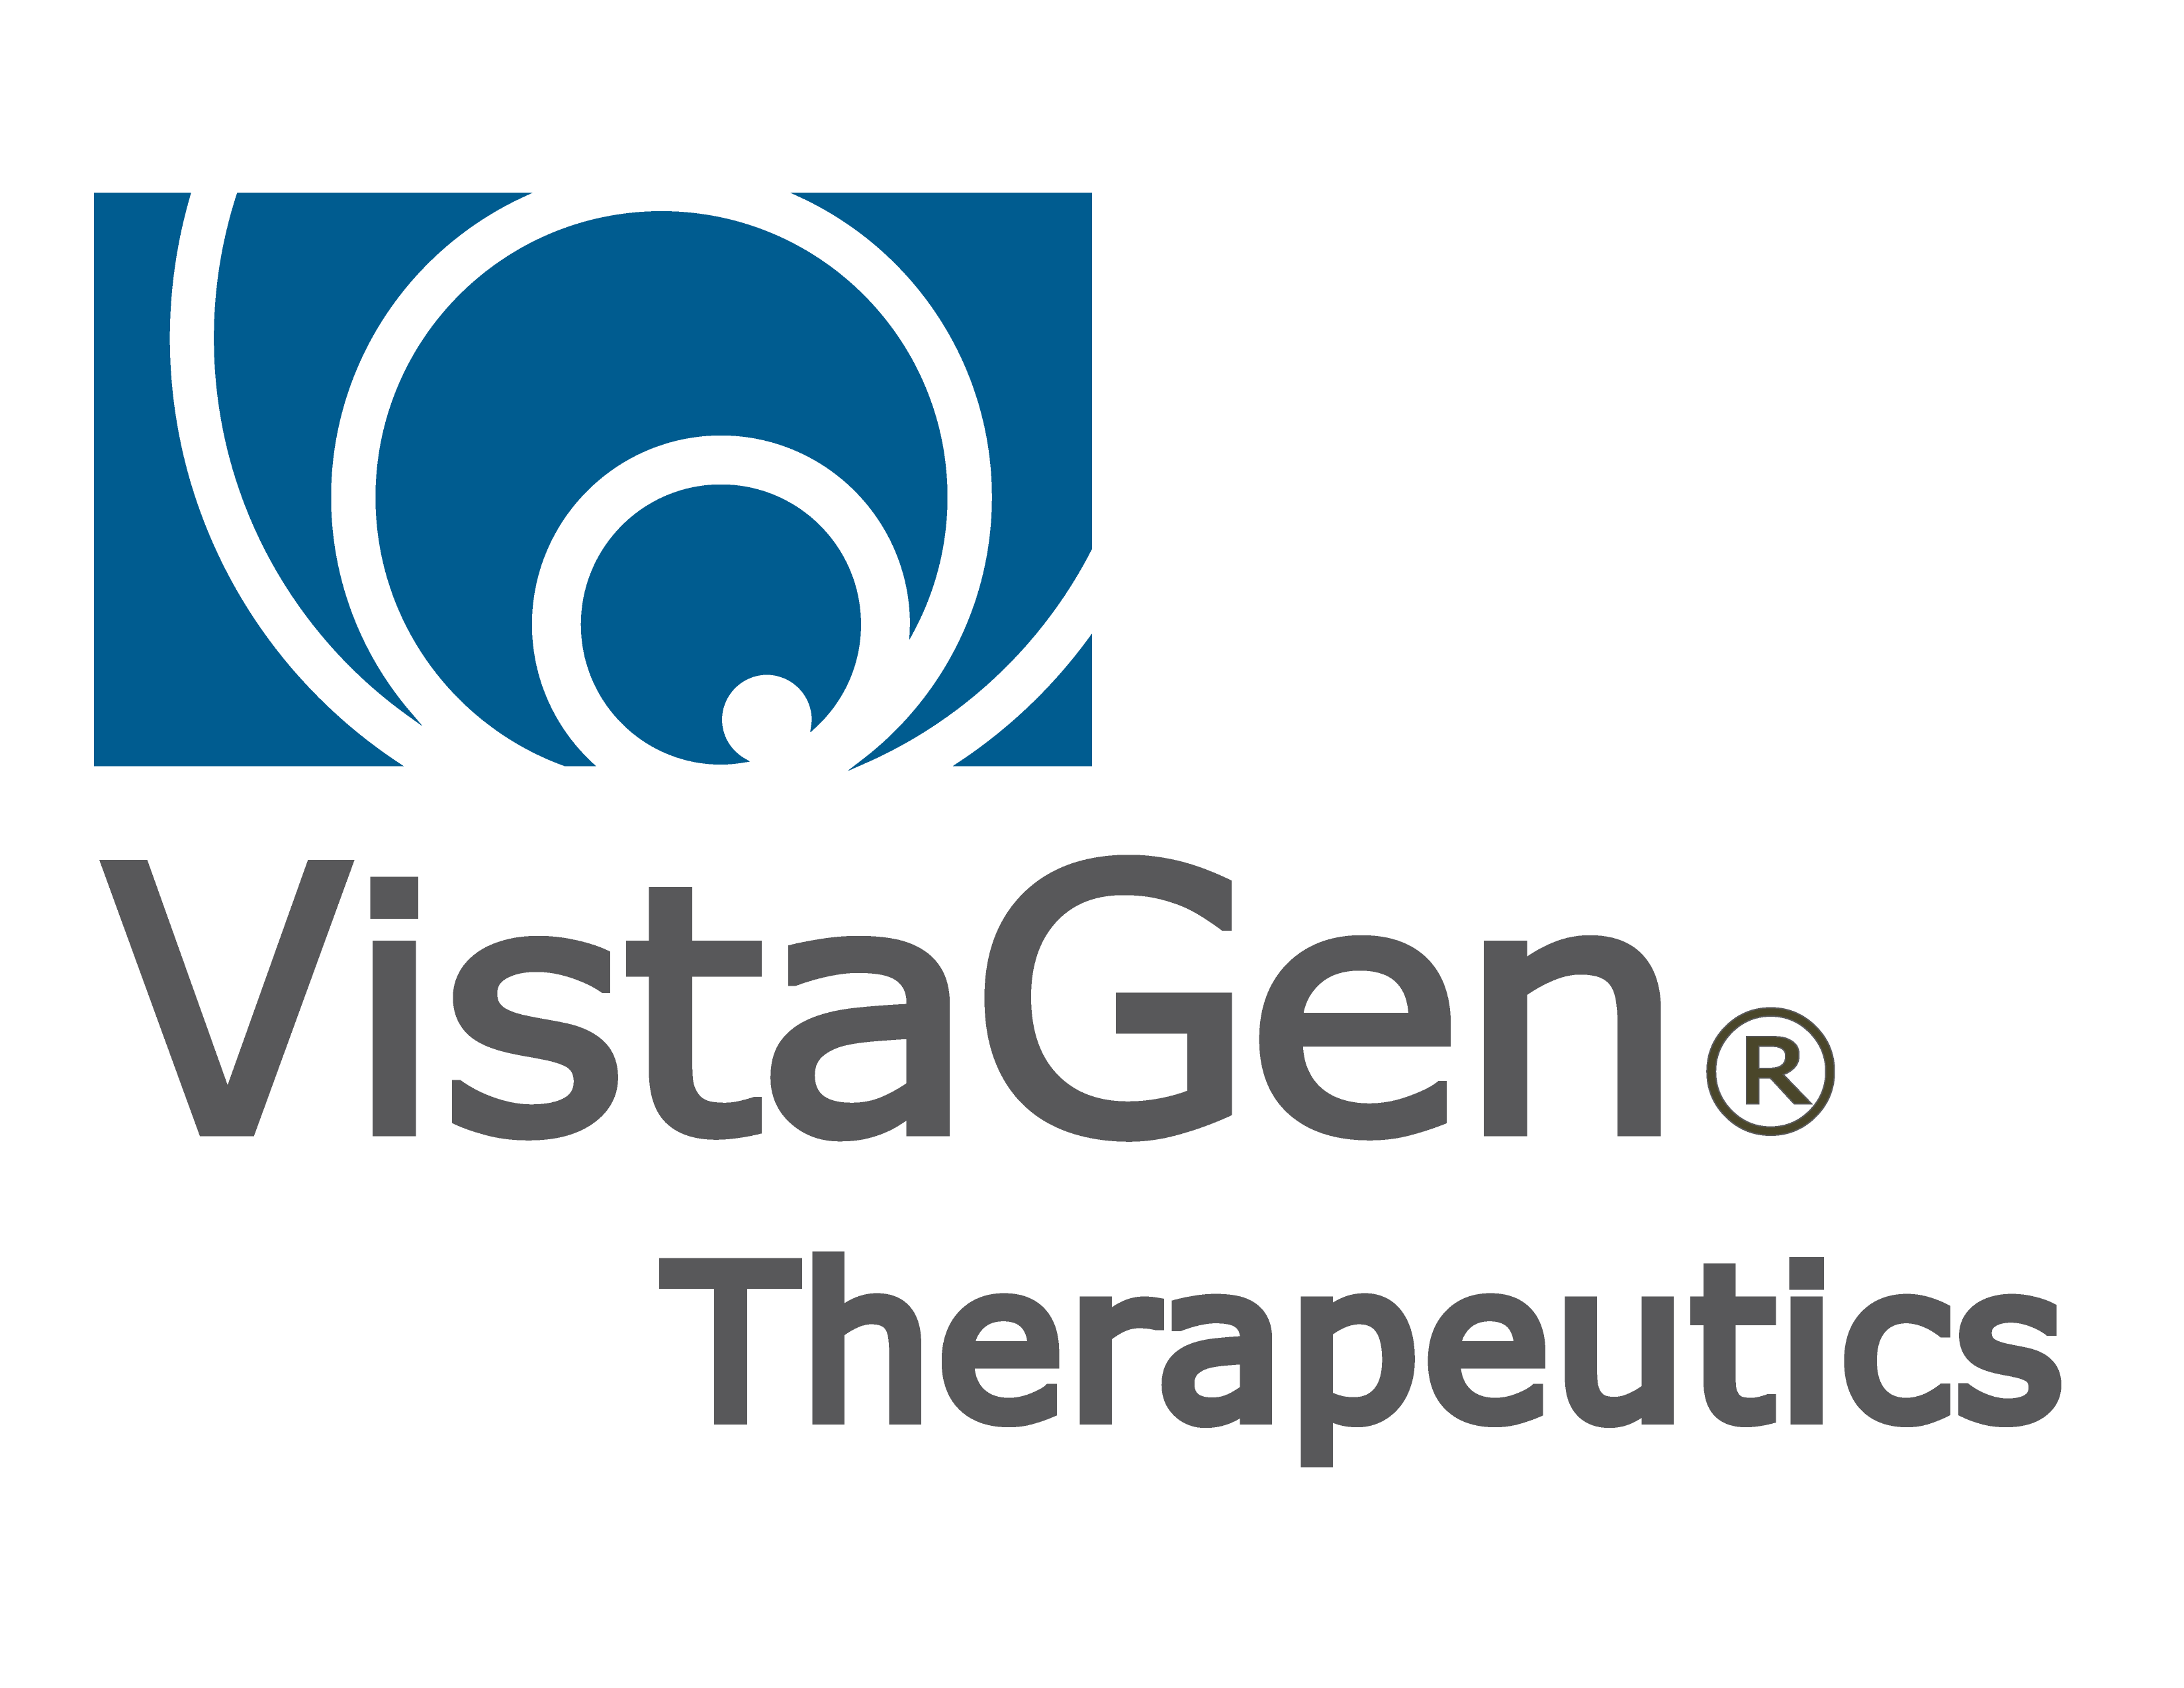 Vistagen Therapeutics